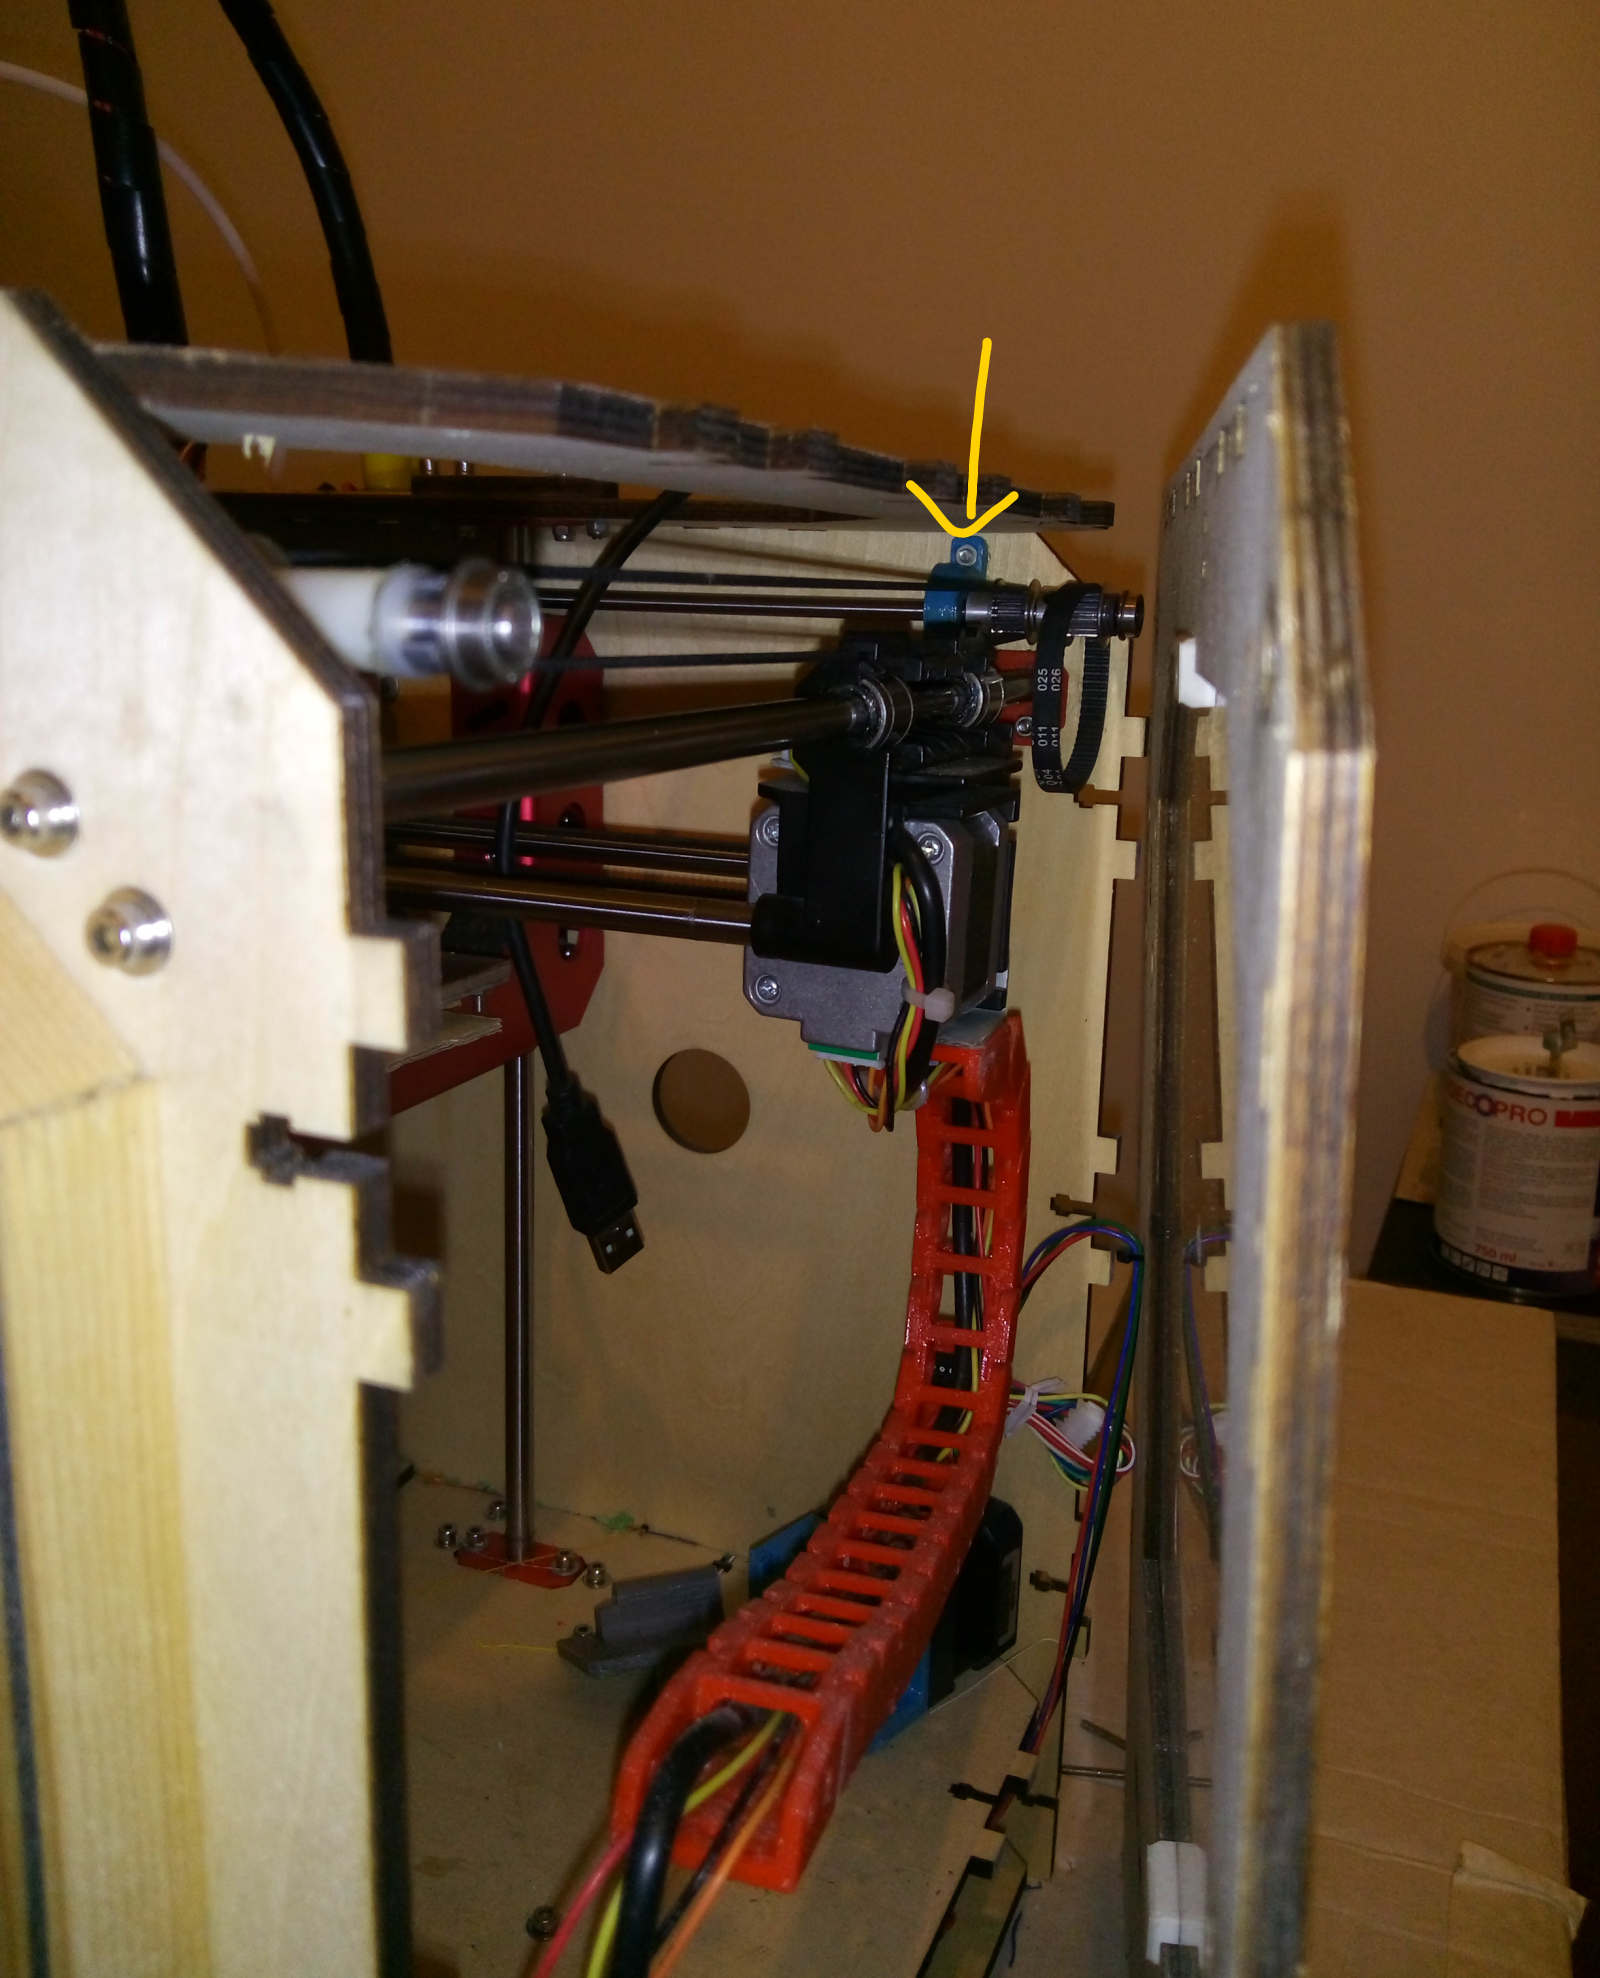 Reparatur von Sprung in Plexiglas (Haube eines Instruments